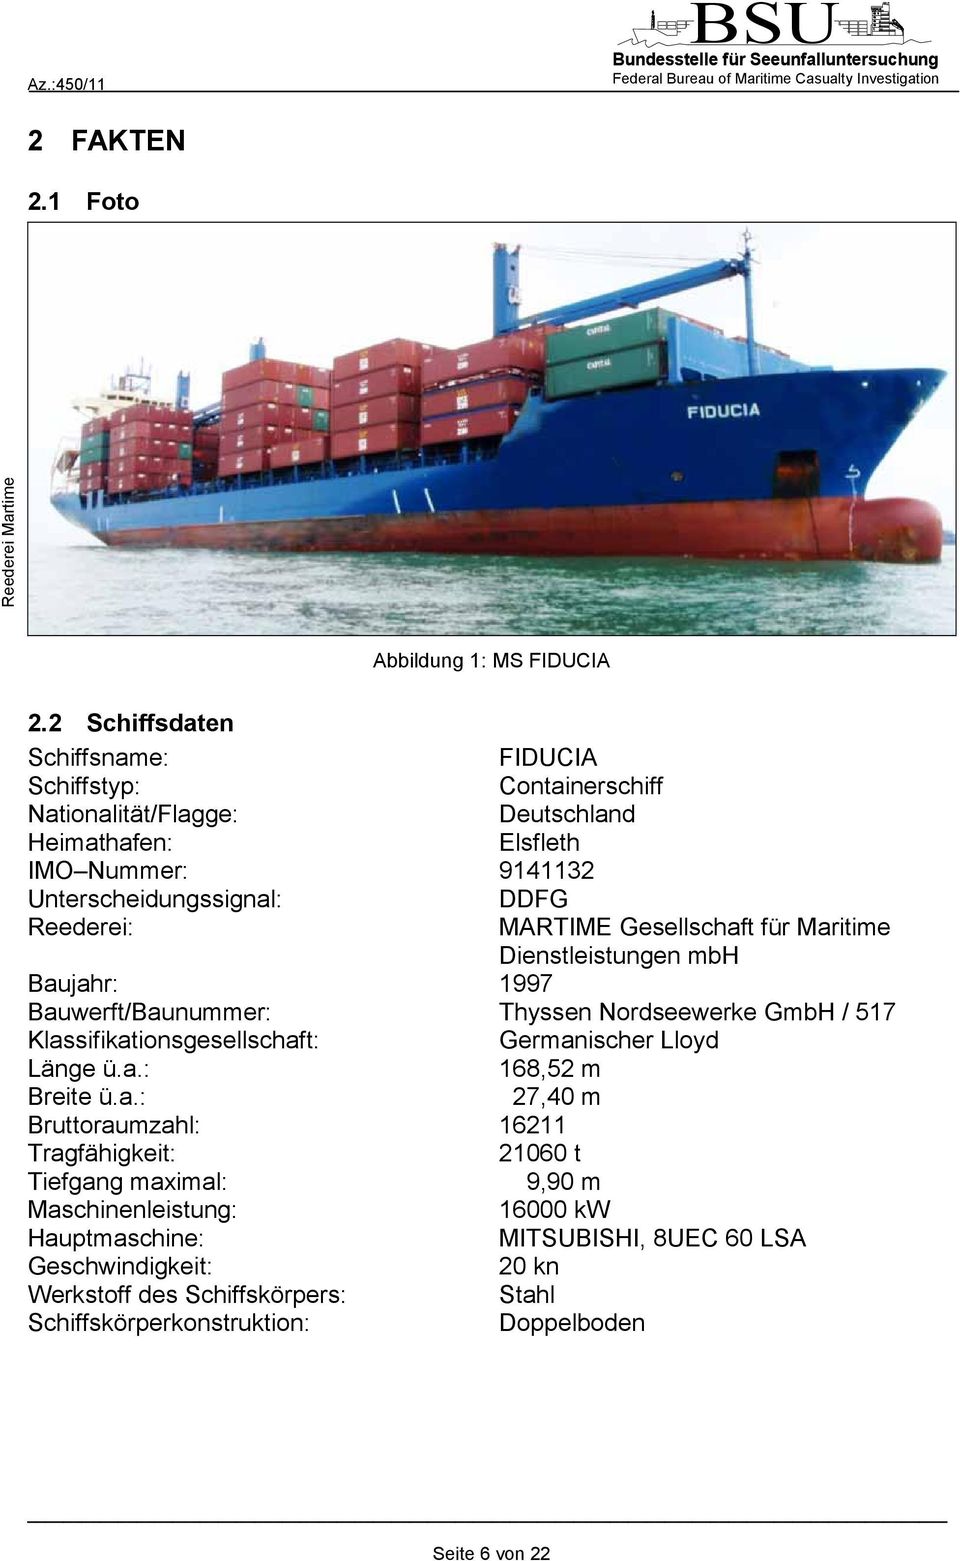 Reederei: MARTIME Gesellschaft für Maritime Dienstleistungen mbh Baujahr: 1997 Bauwerft/Baunummer: Thyssen Nordseewerke GmbH / 517 Klassifikationsgesellschaft: Germanischer